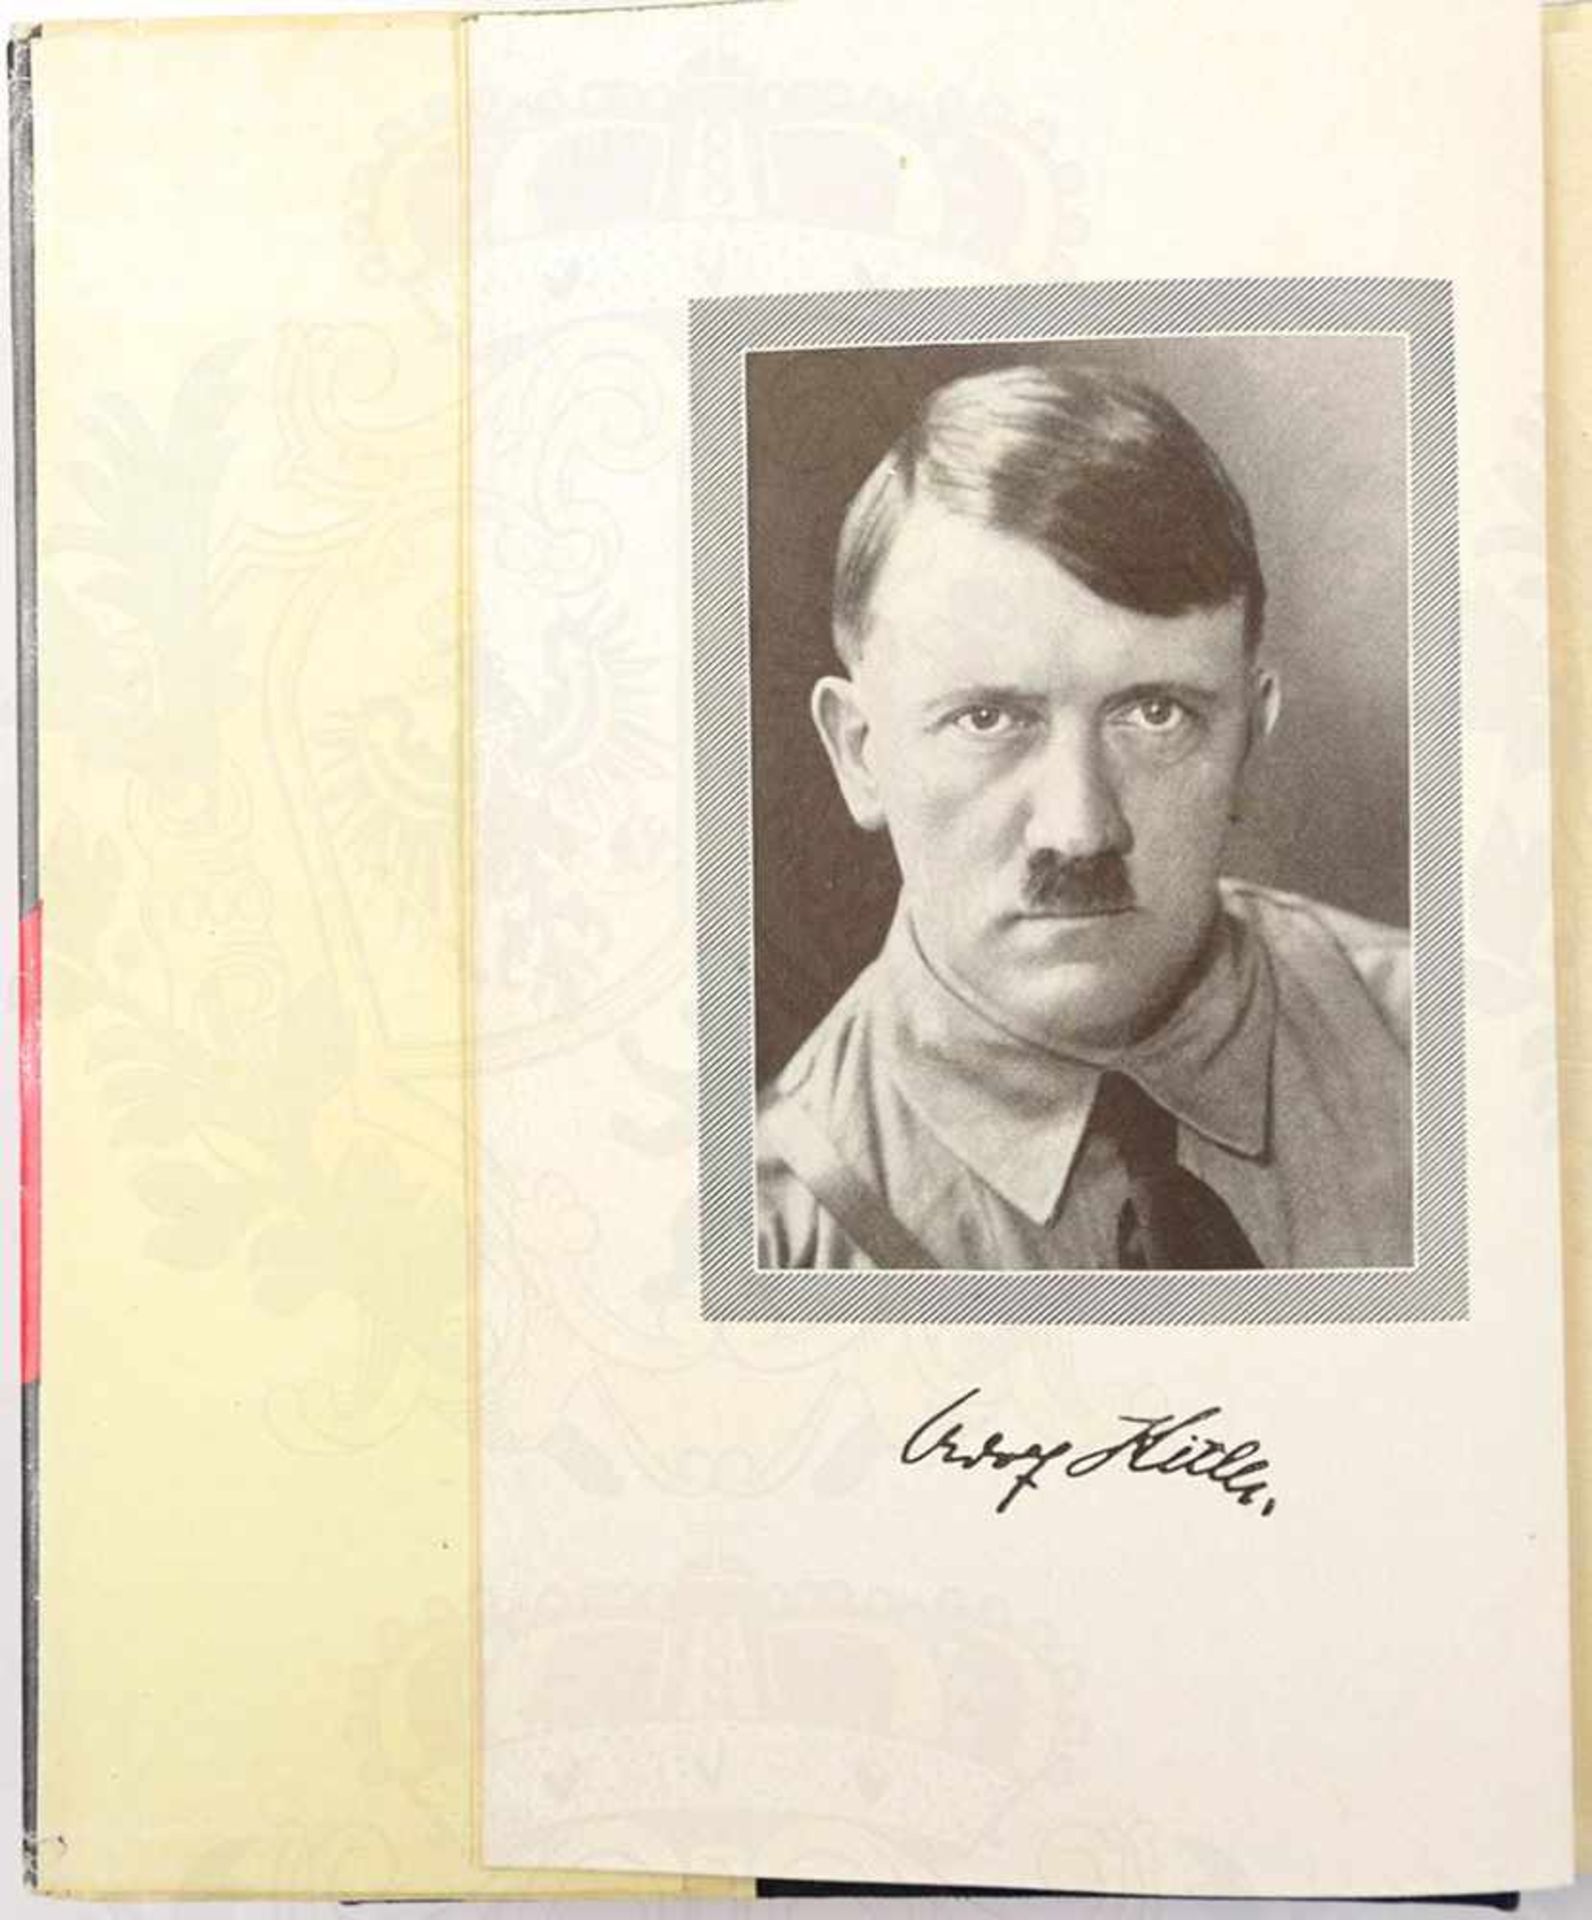 MEIN KAMPF, A. Hitler, Volksausgabe, Franz Eher Verlag, München 1942, 781 S., 1 Porträtbild, - Bild 2 aus 3